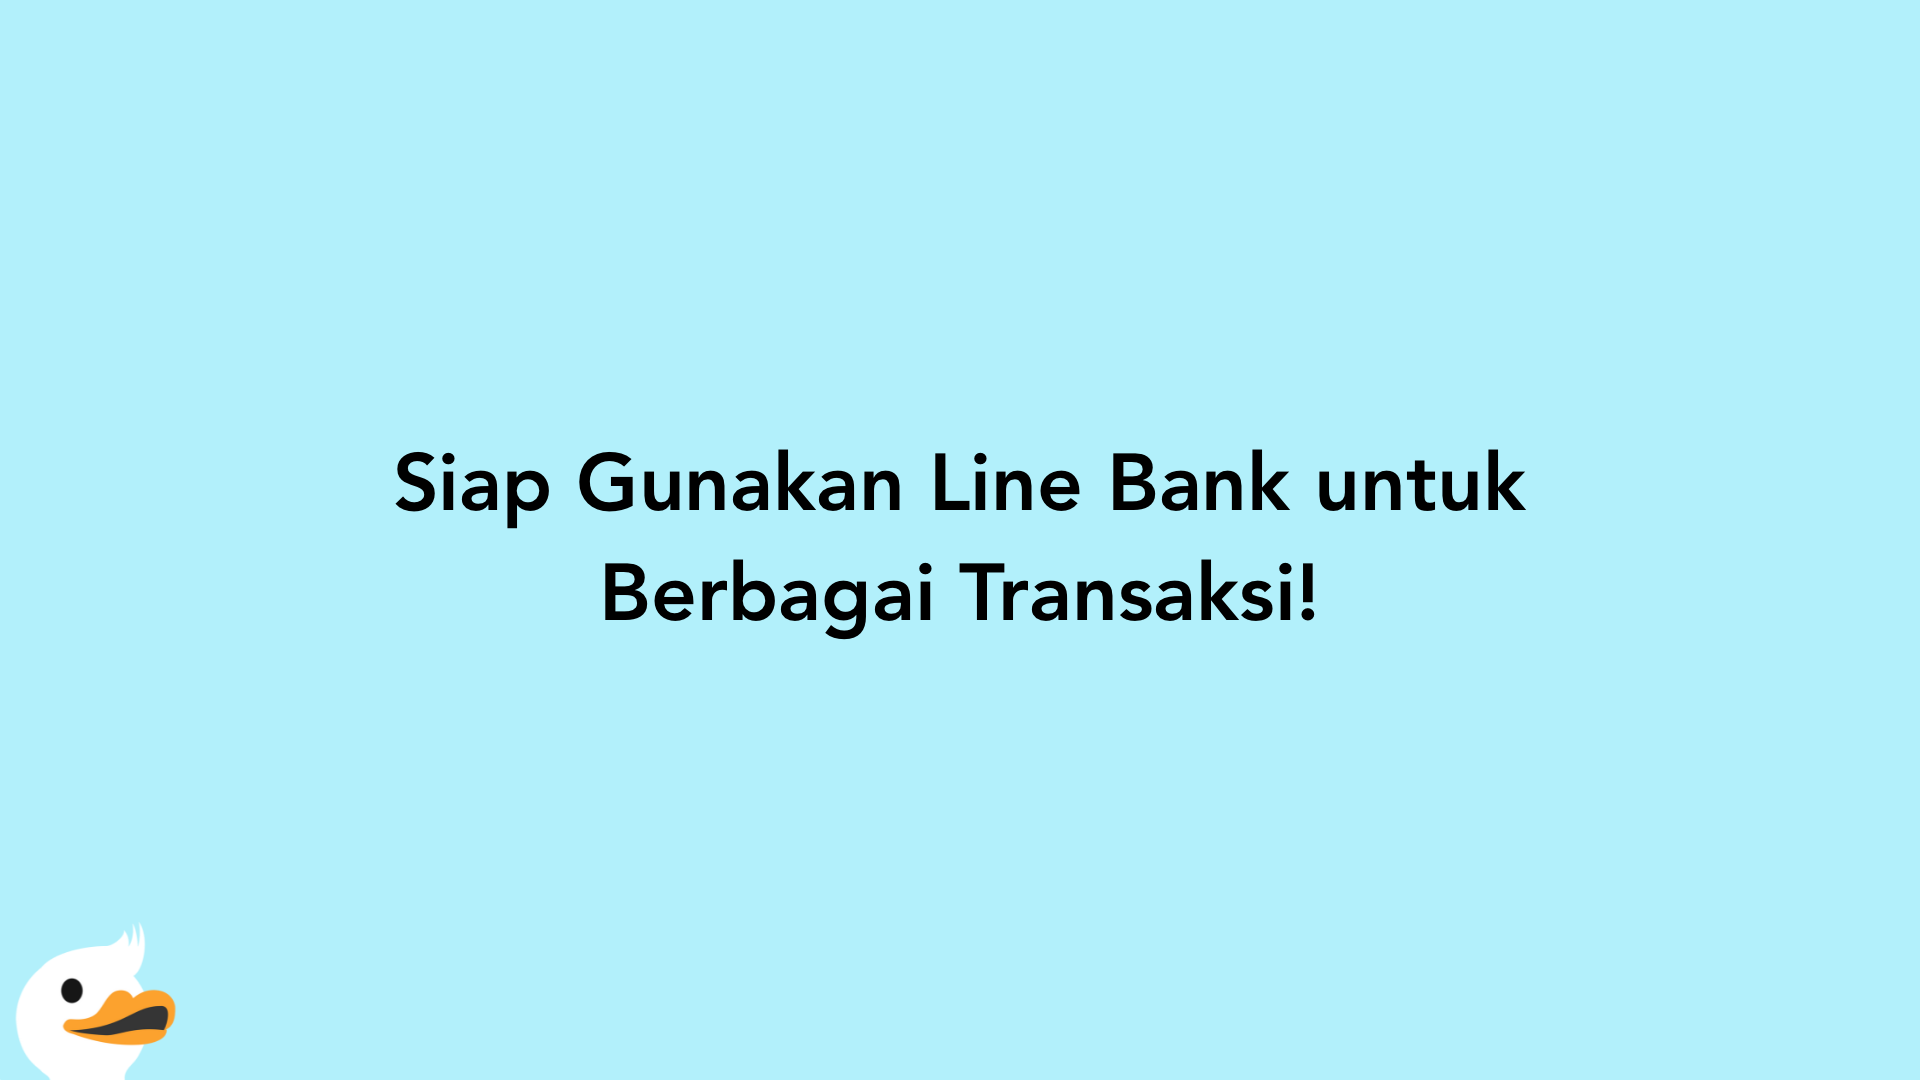 Siap Gunakan Line Bank untuk Berbagai Transaksi!